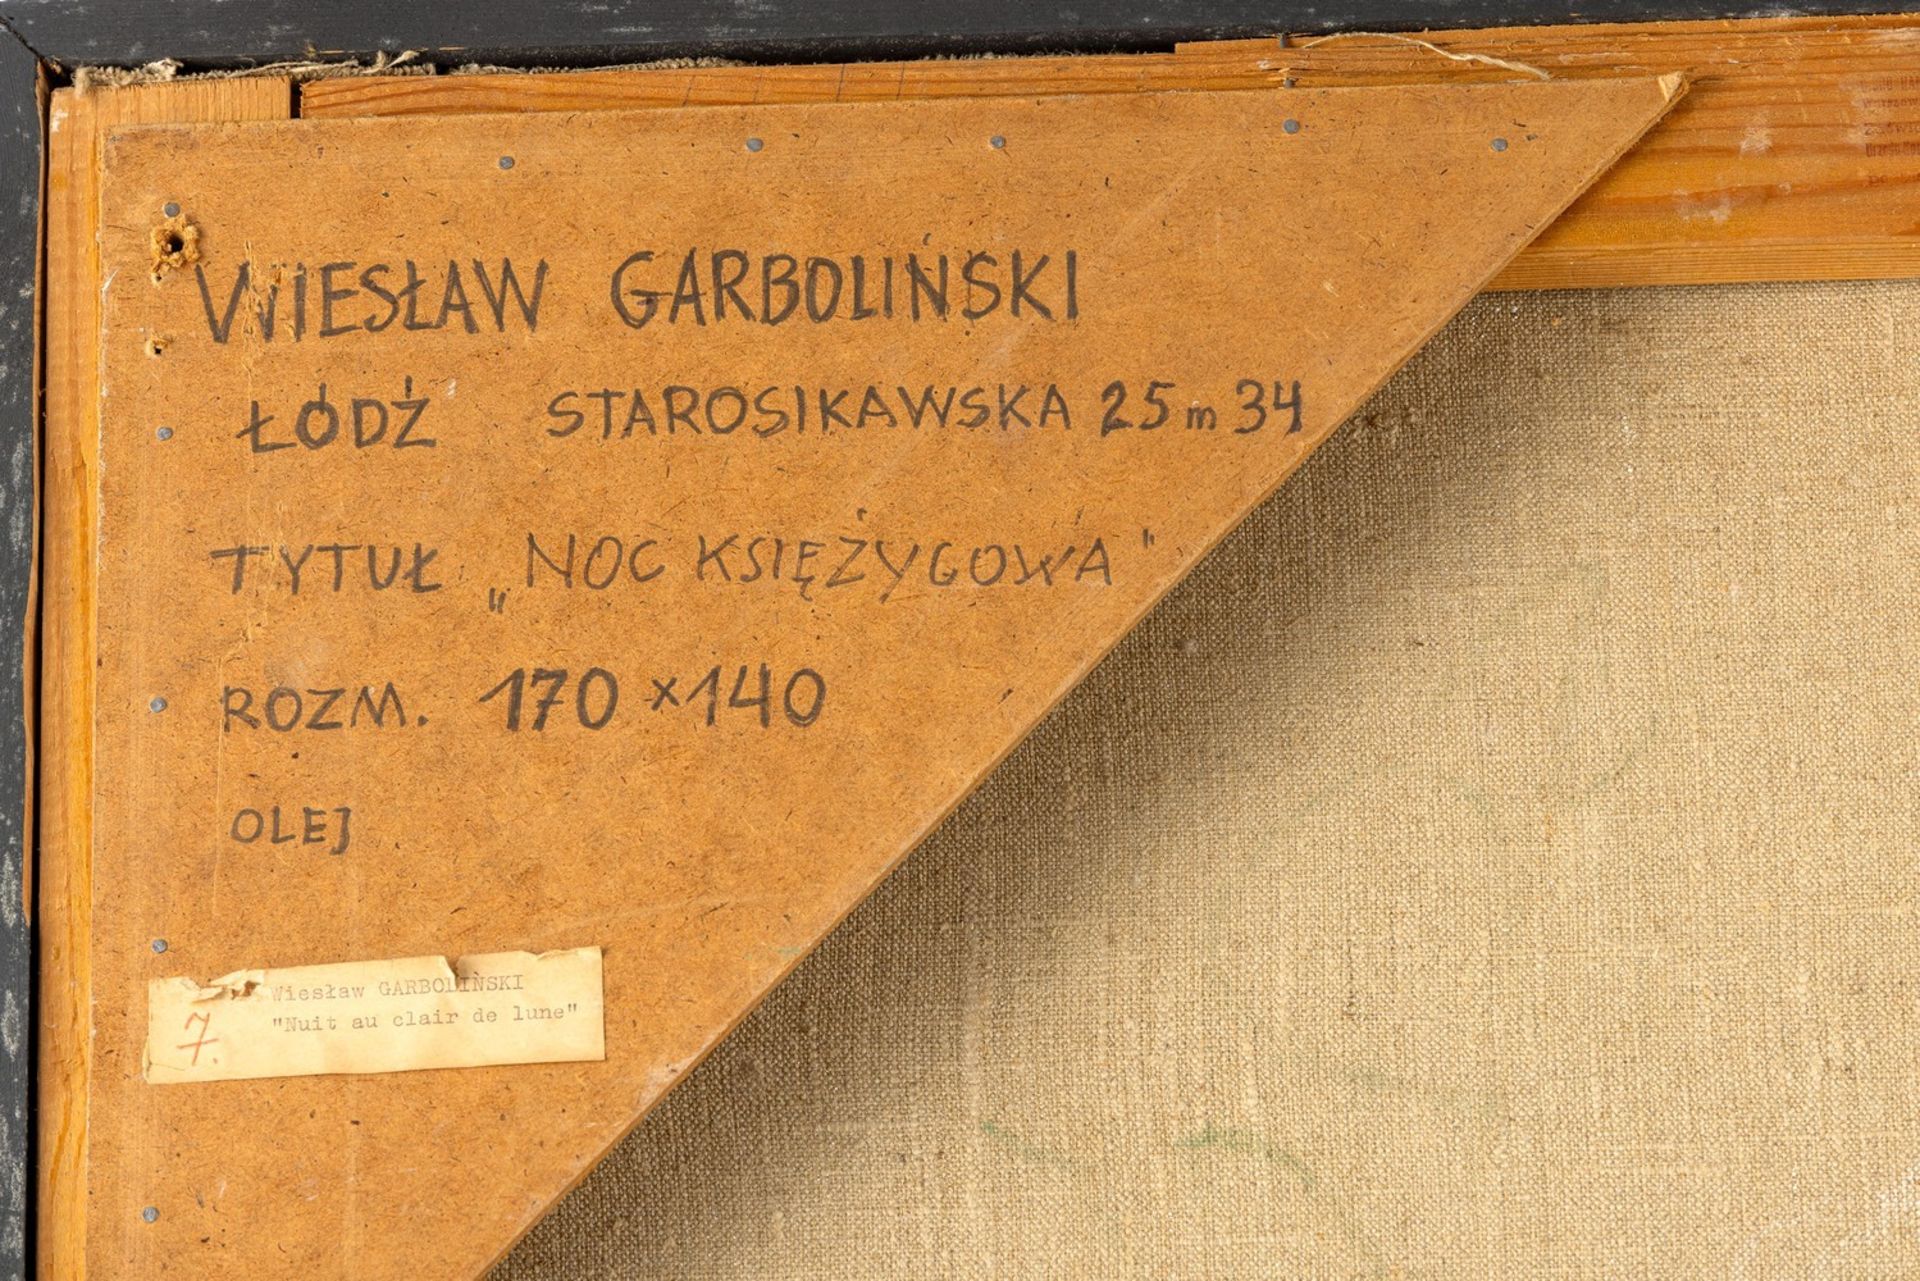 Garboliński, Wiesław (Głownie, Łódź 1927-2014) - Image 4 of 4